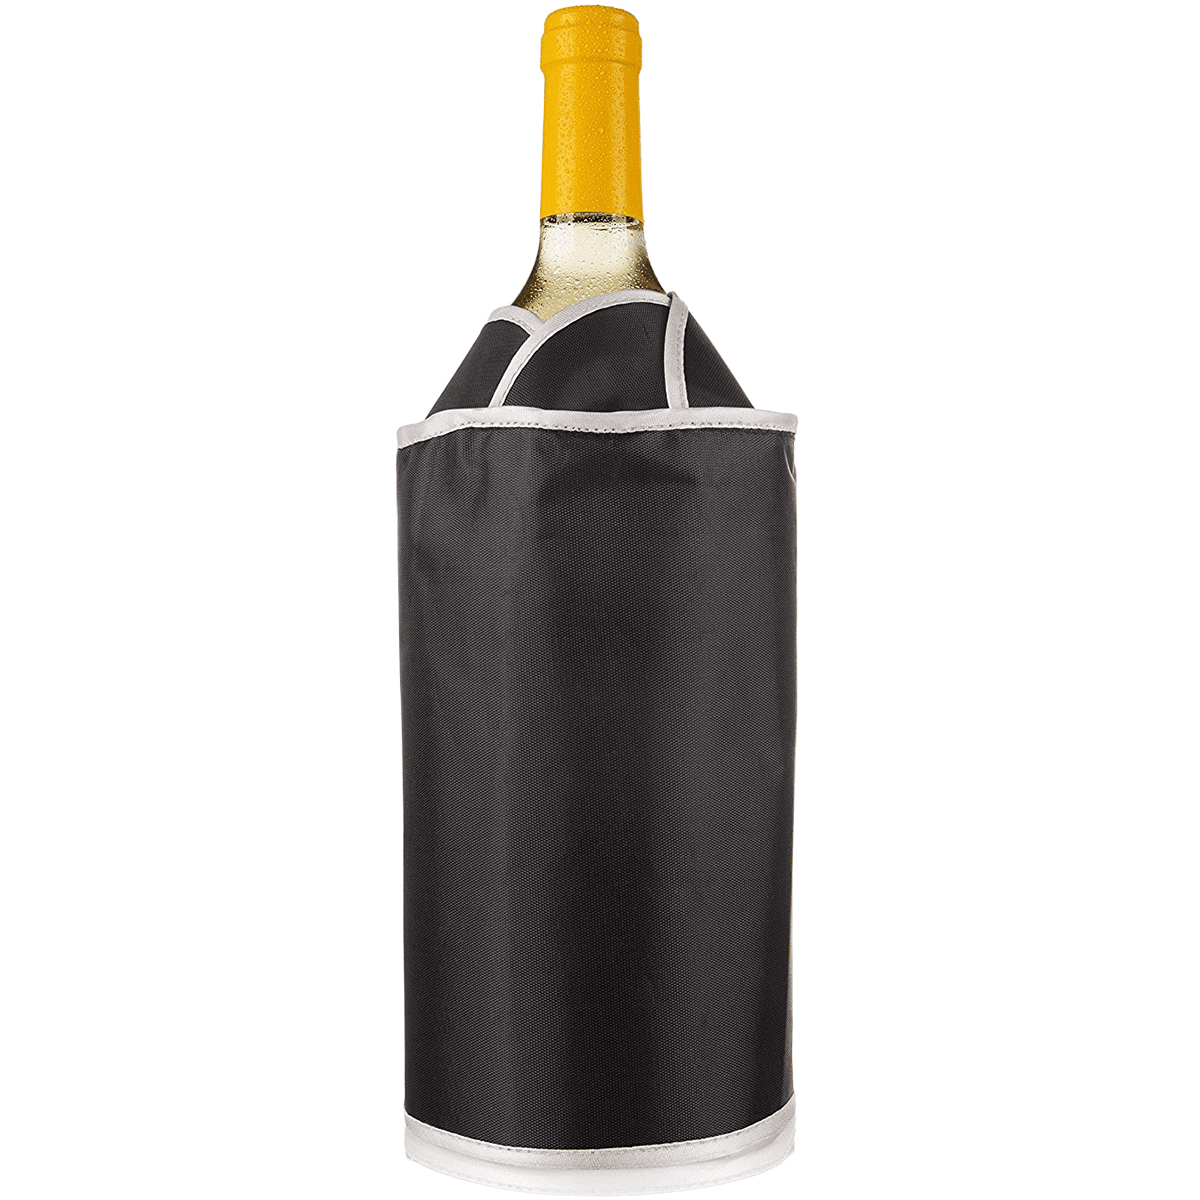 Vacu Vin Active Wine Cooler Tulip - Black